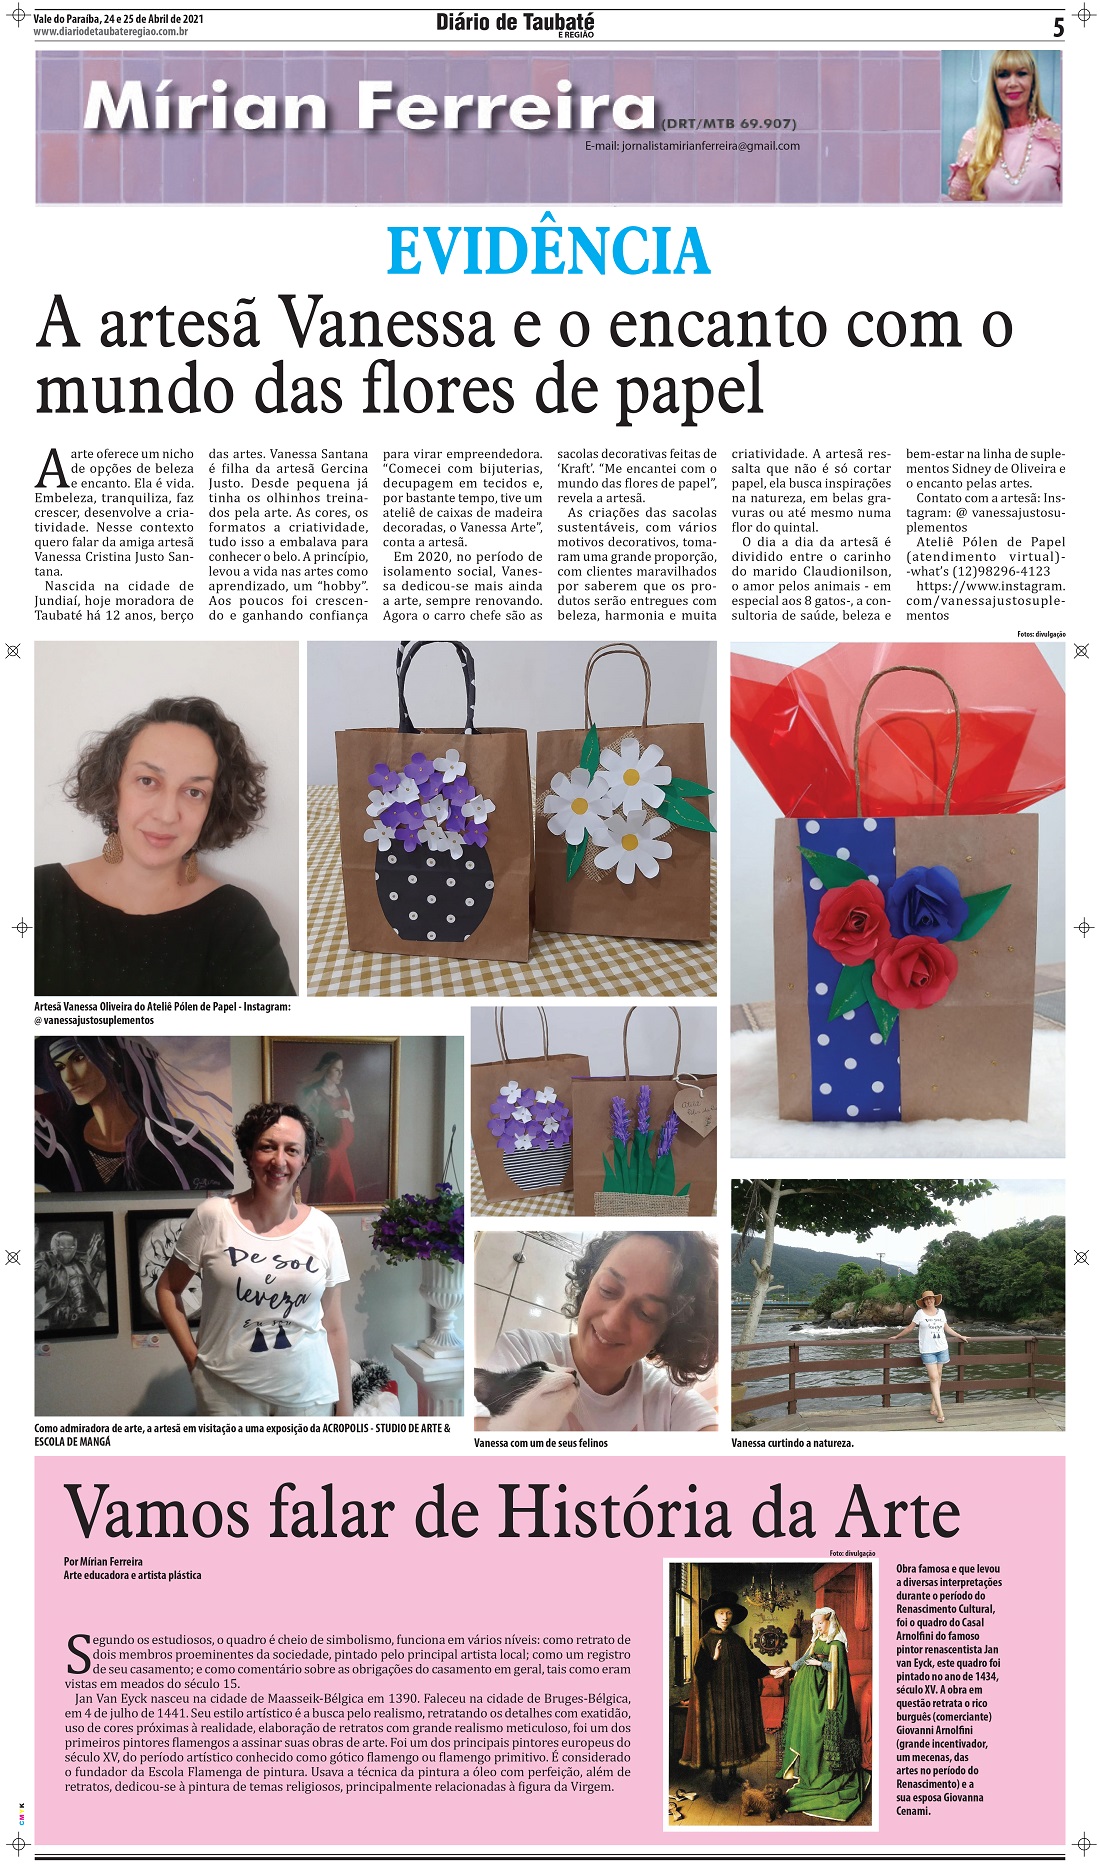 Evidência – A artesã Vanessa e o encanto com o mundo das flores de papel